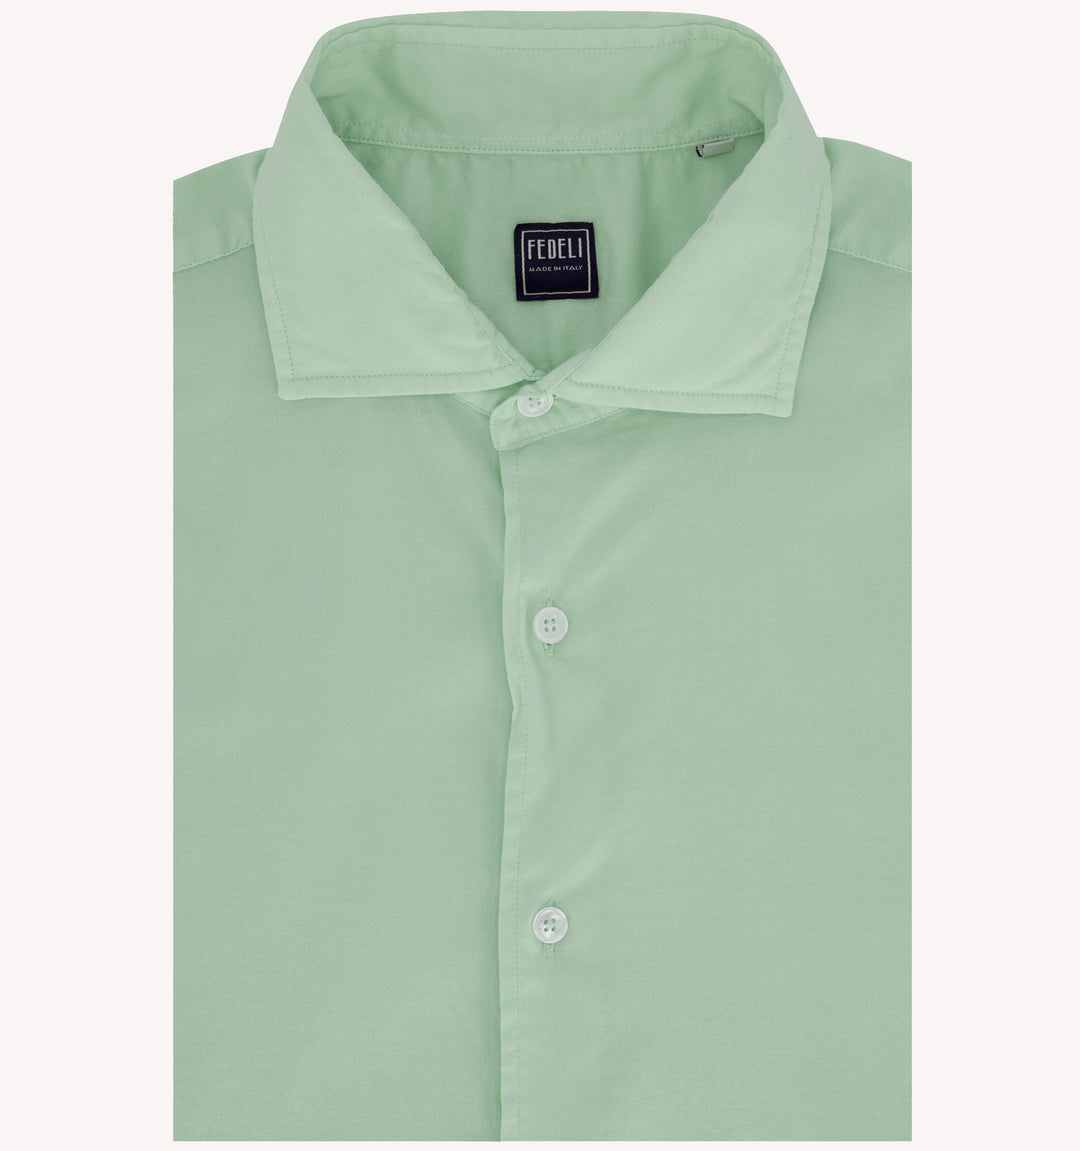 Fedeli Sport Shirt in Light Green